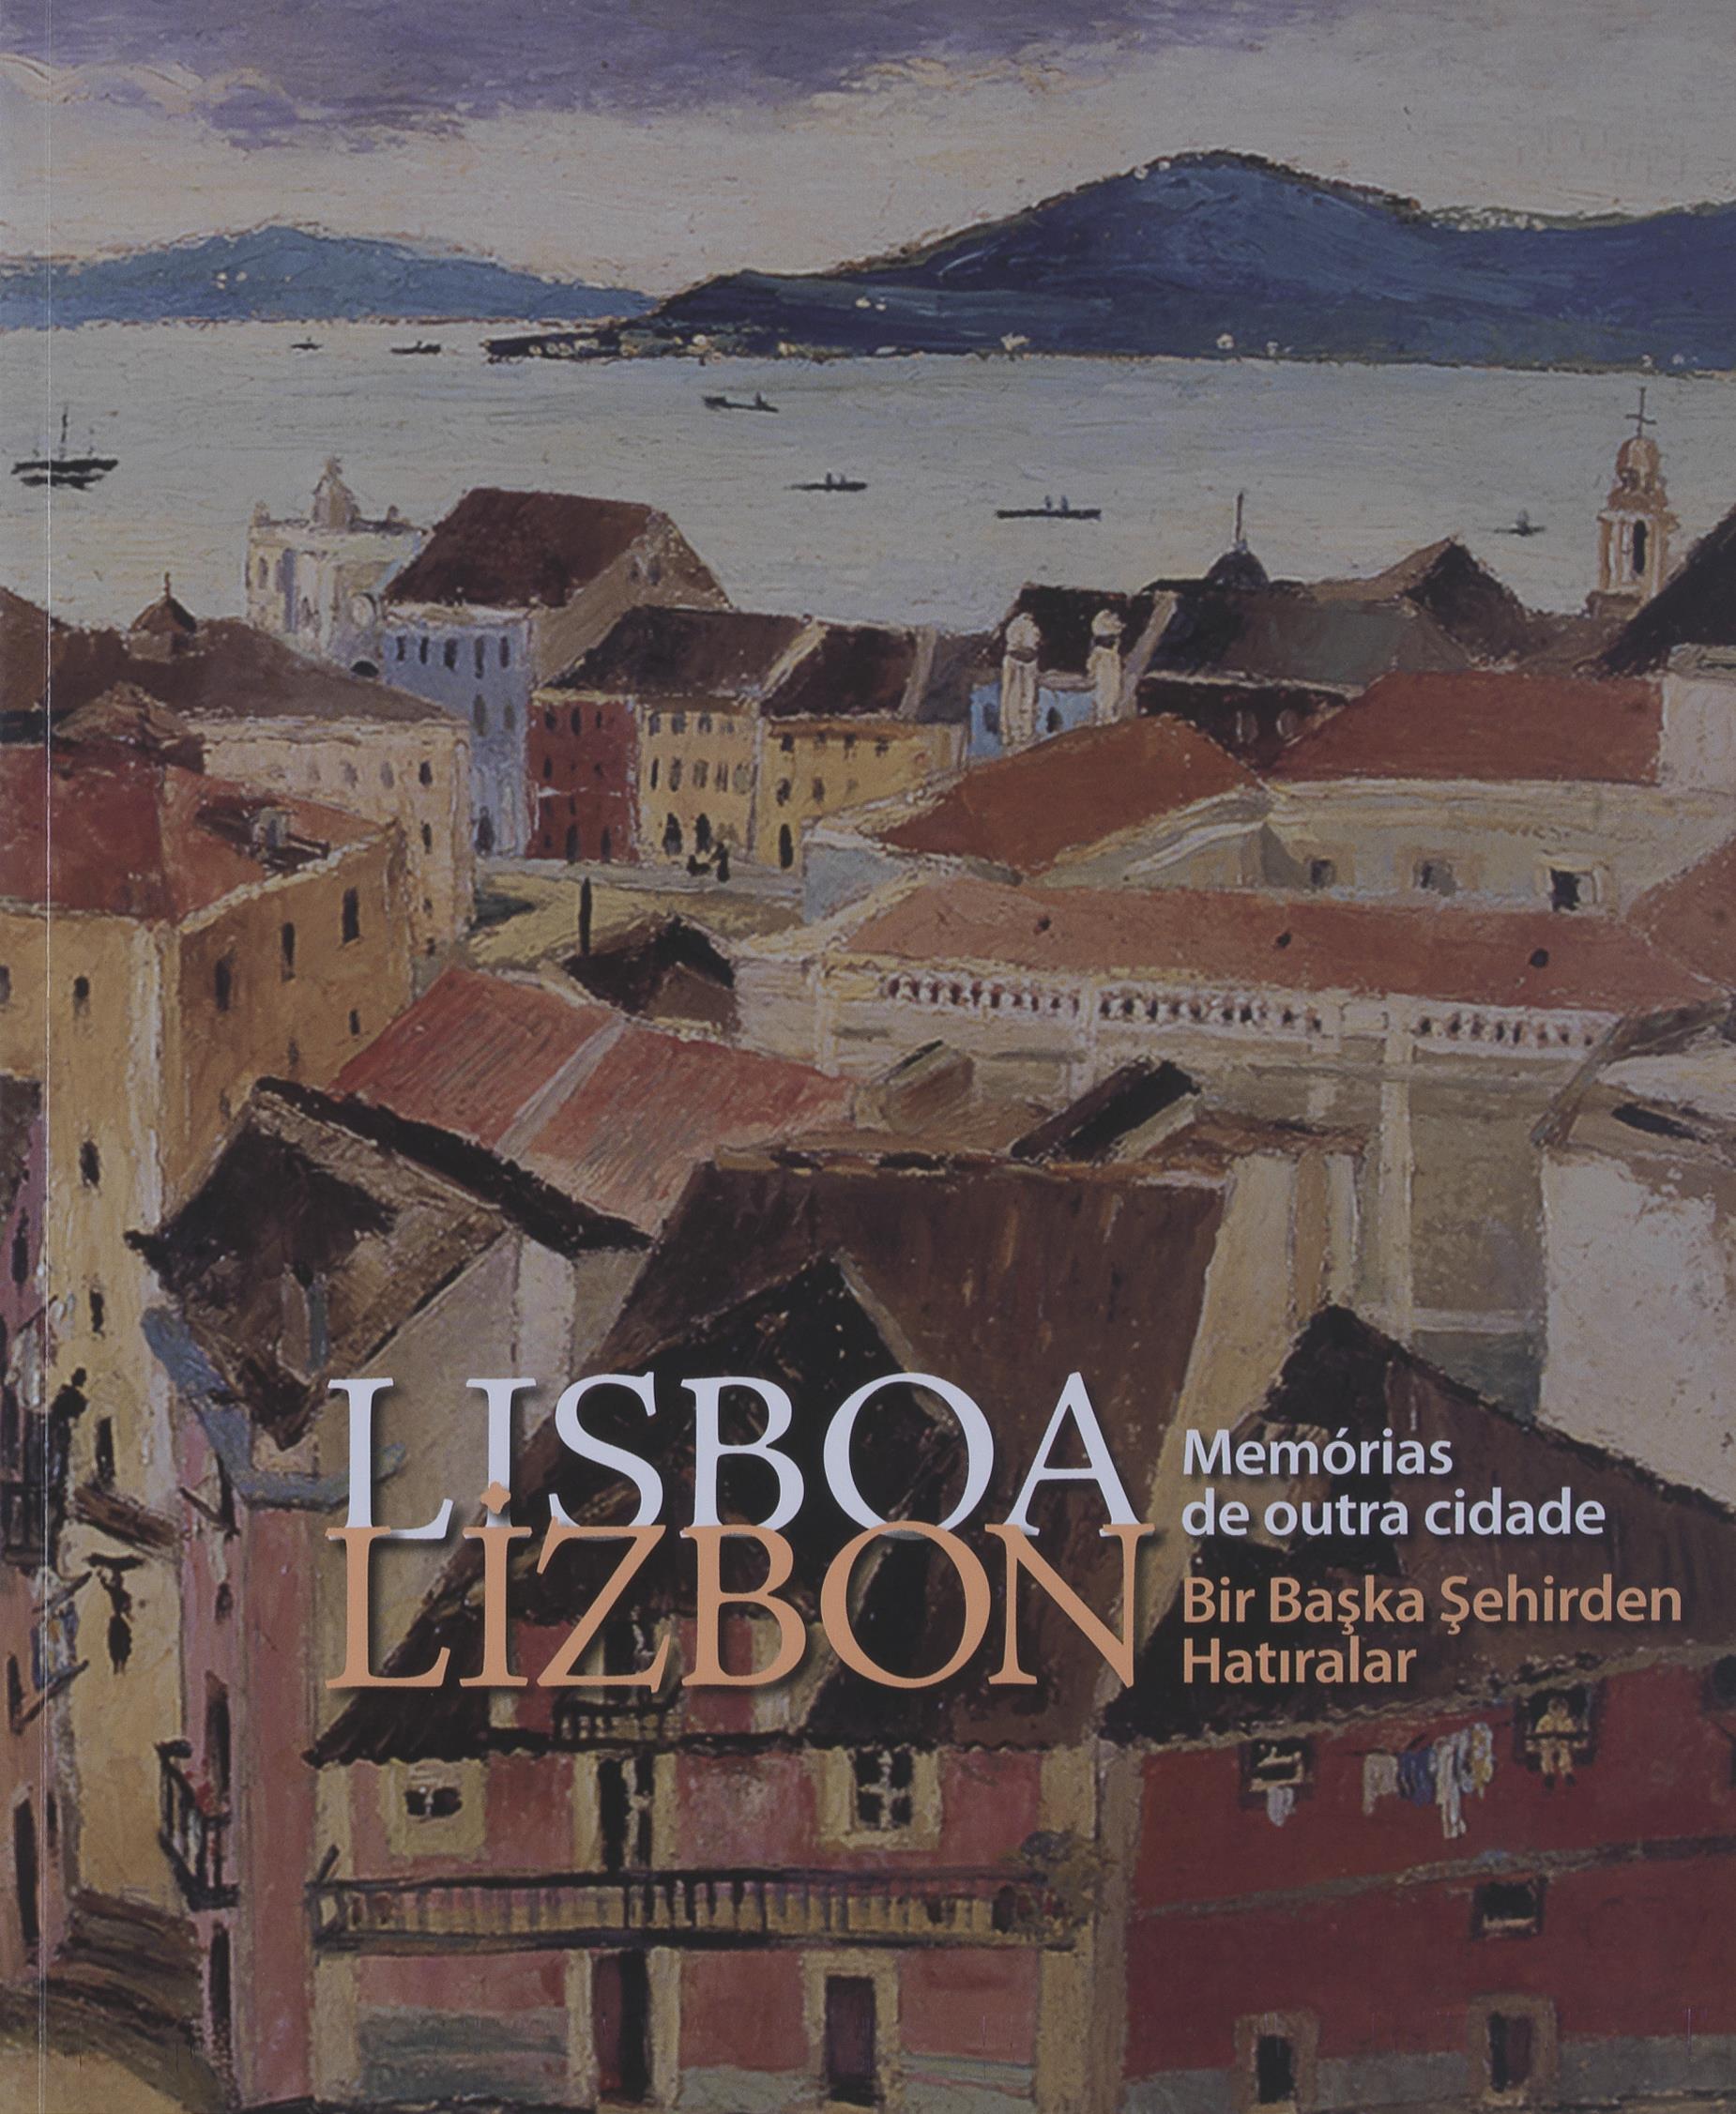 Lisboa. Memórias de Outra Cidade / Lizbon. Bir Baska Sehirden Hatiralar